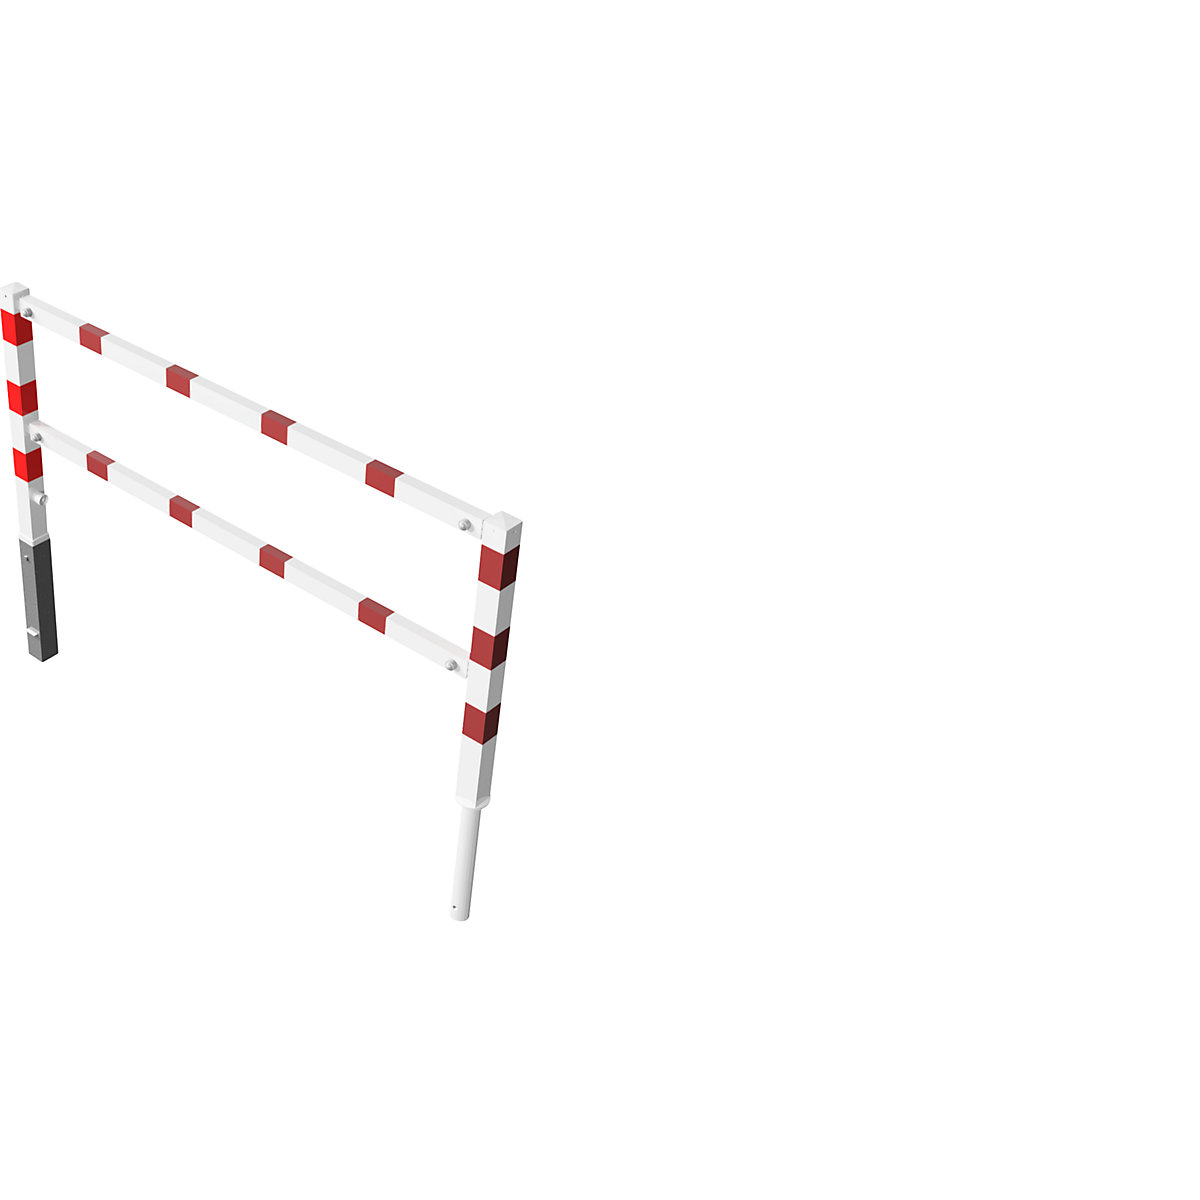 Wegesperre, schwenkbar, mit Ober- und Knieholm, weiß mit roten Reflexstreifen, Breite 2000 mm